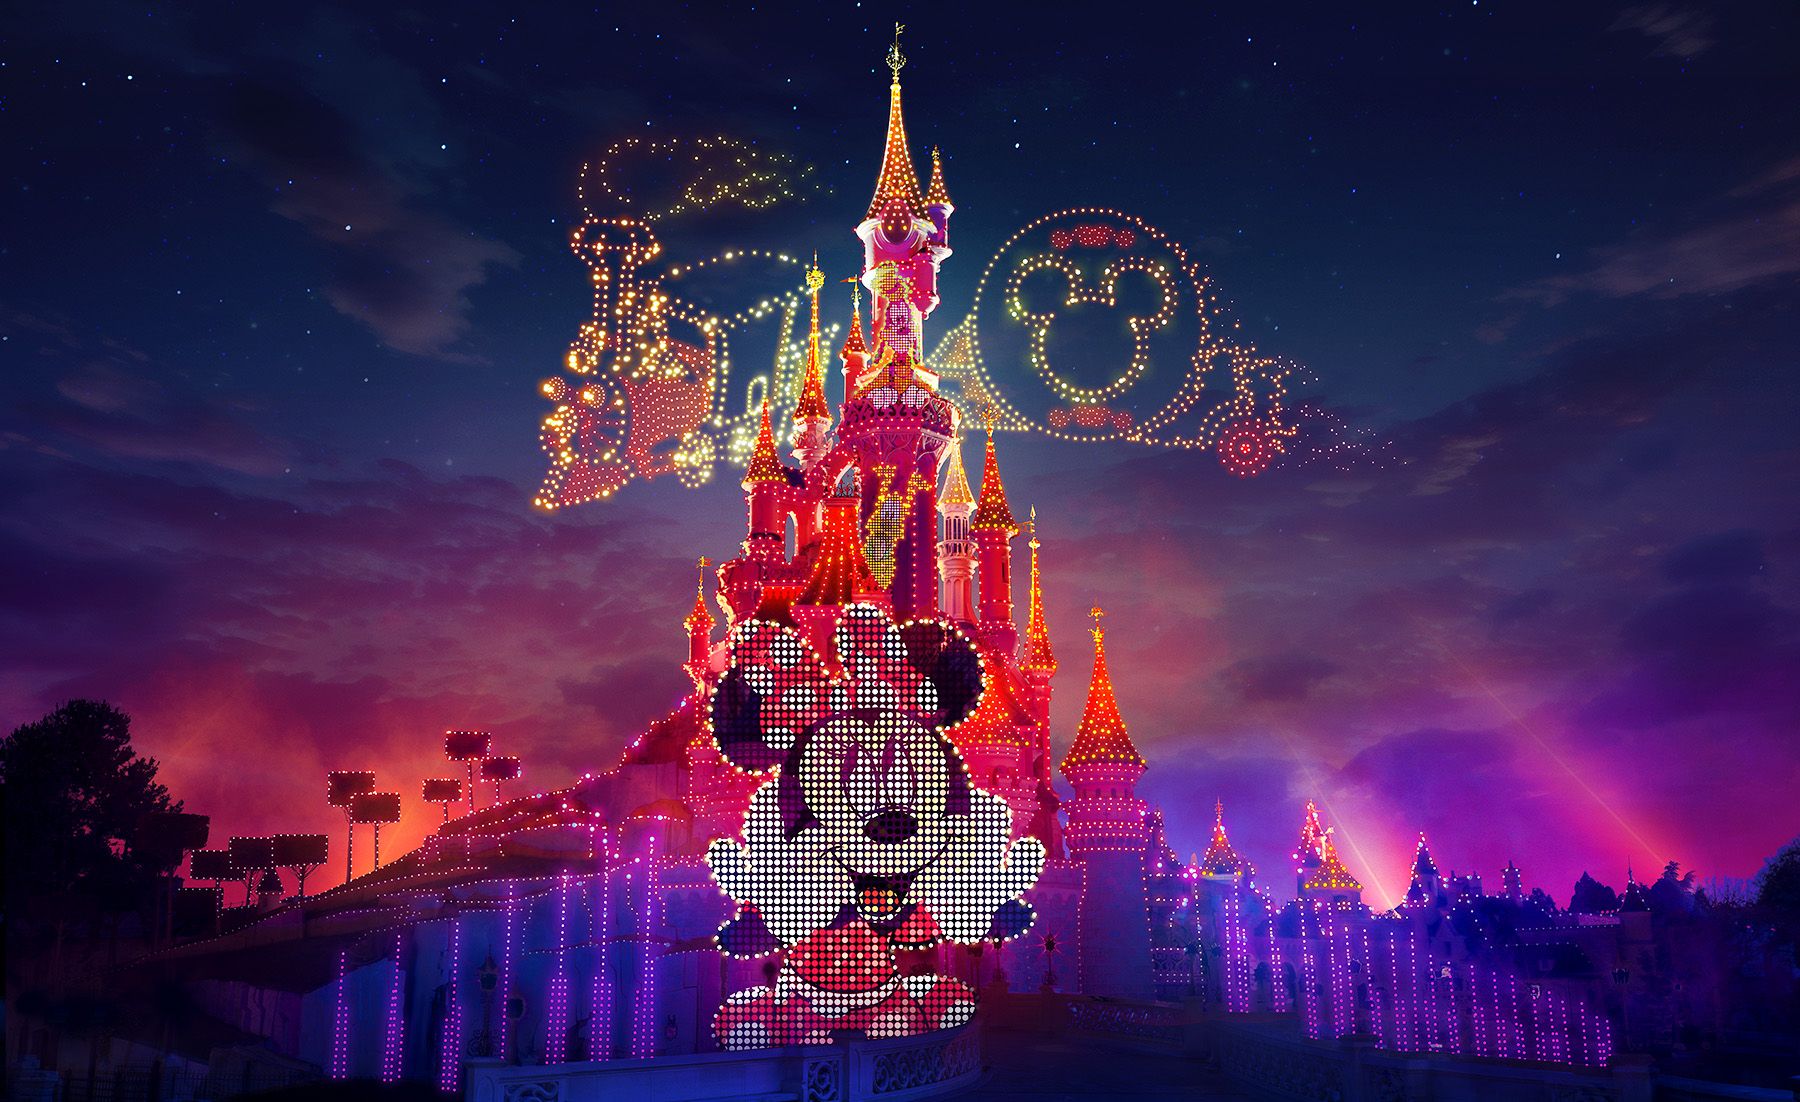 Disneyland Paris fête ses 30 ans : voici les nouvelles attractions